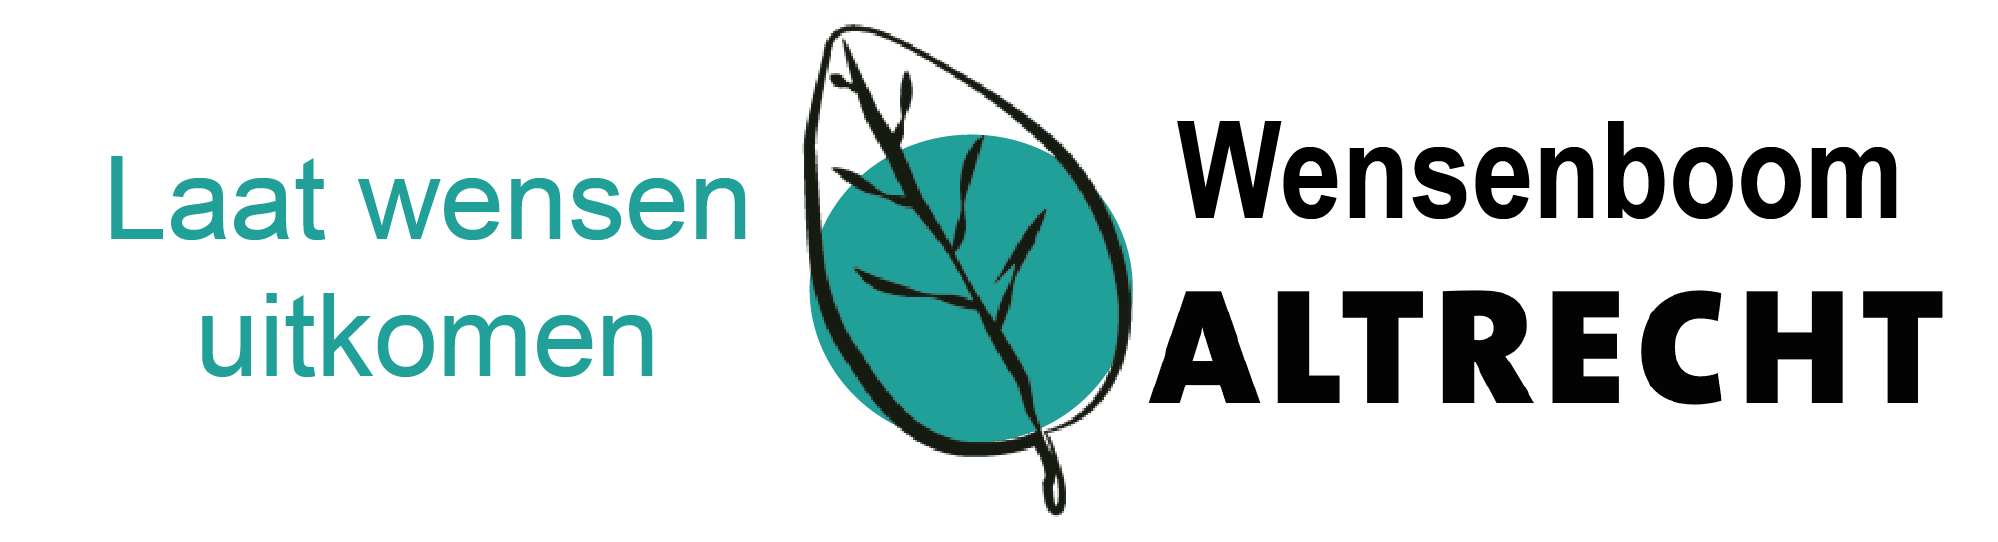 logo wensenboom